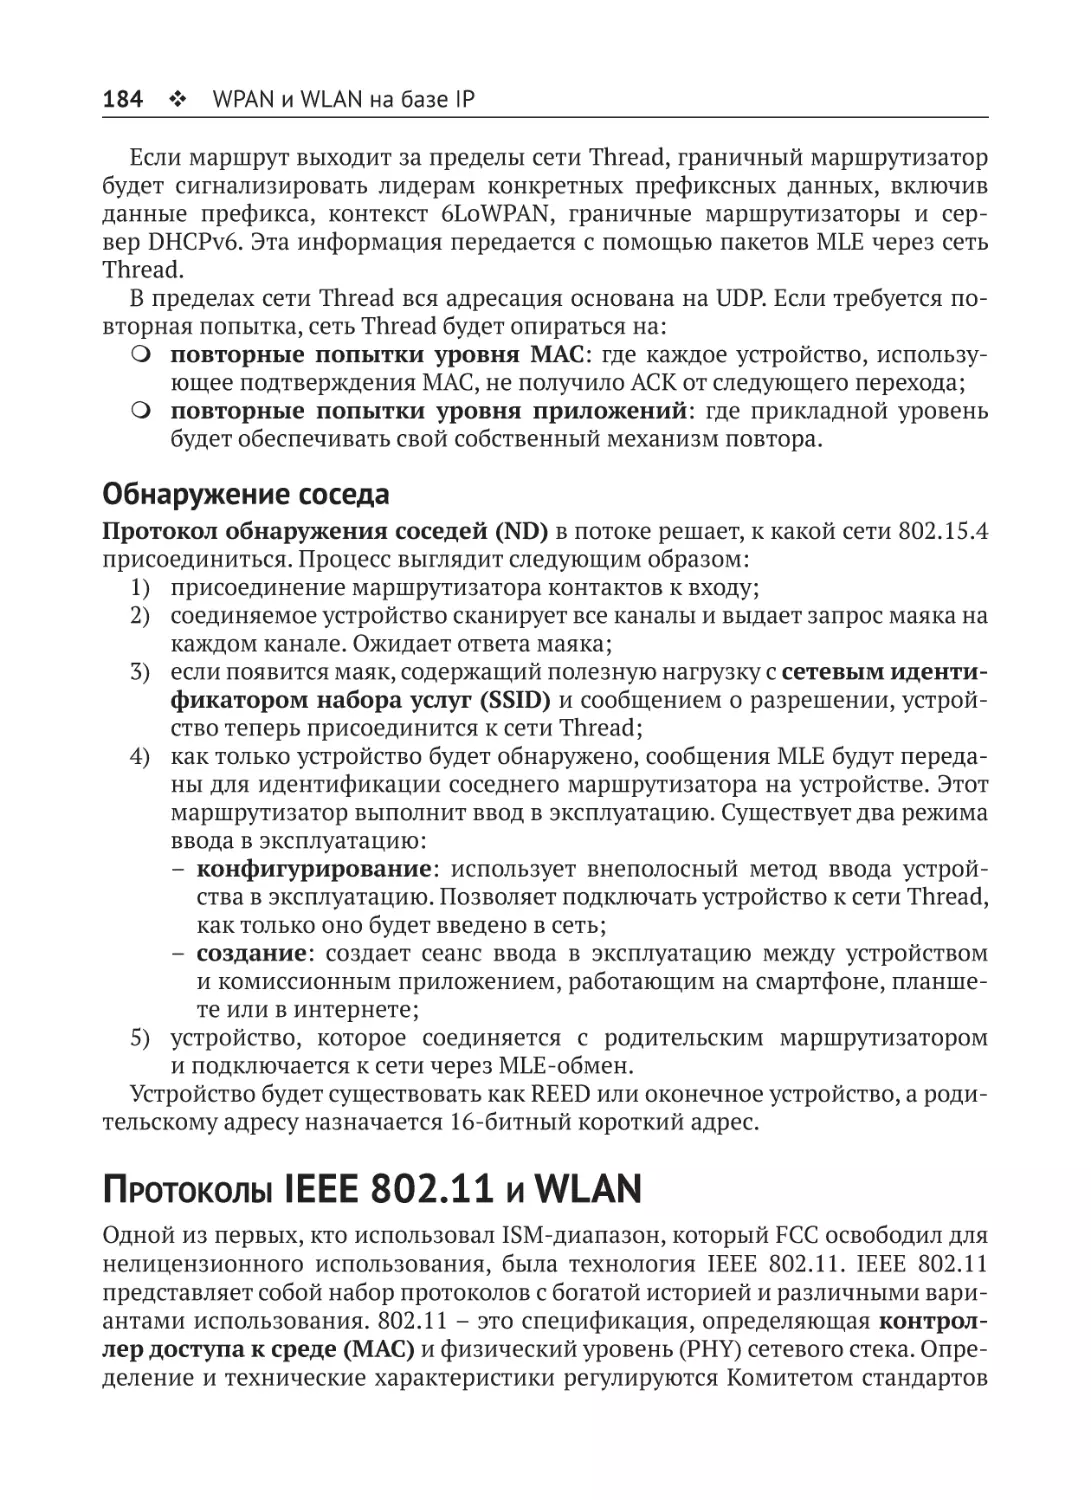 Обнаружение соседа
Протоколы IEEE 802.11 и WLAN